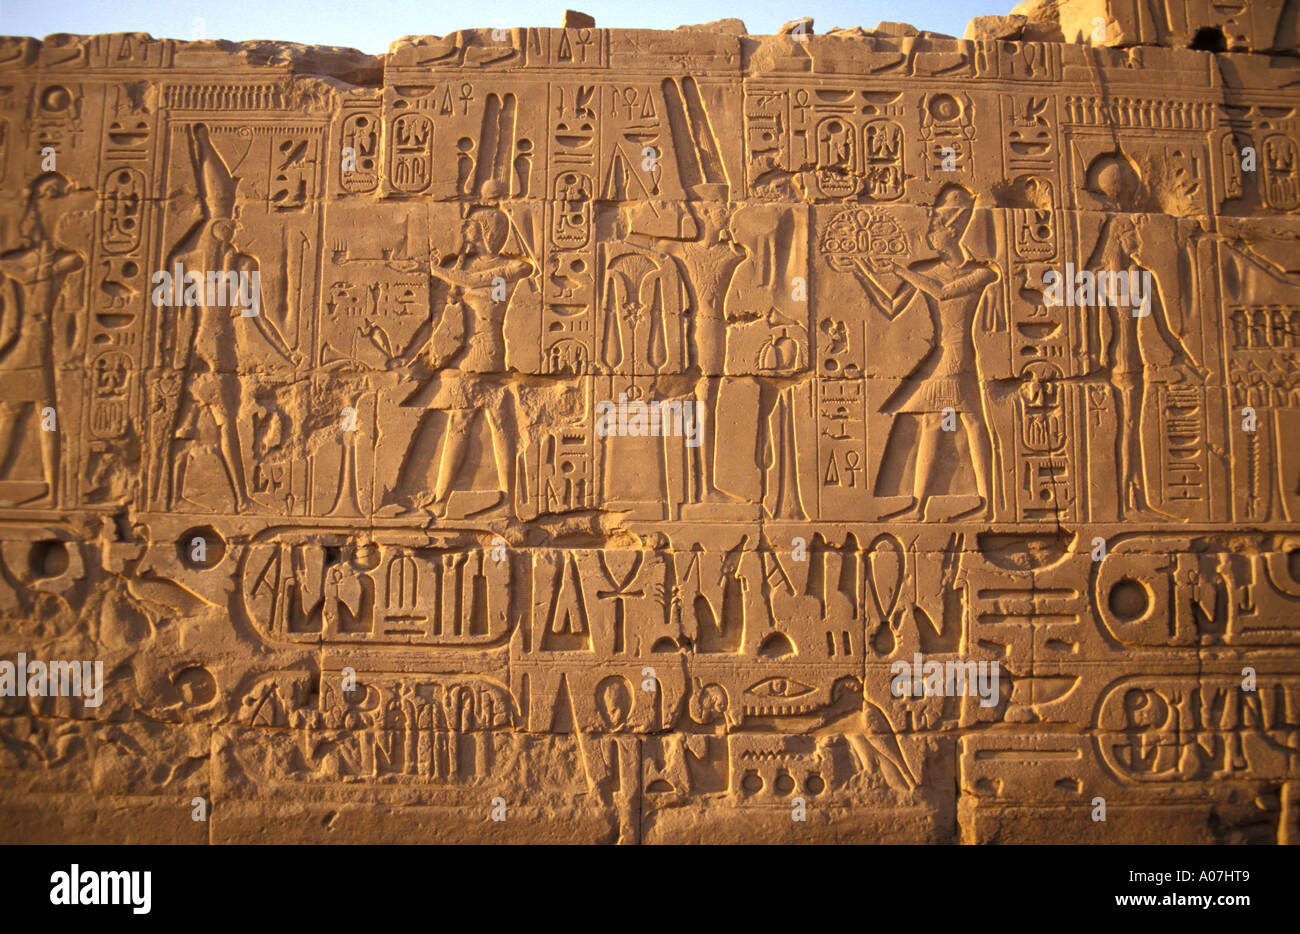 Ornate Walls of the Karnak Temple near Luxor, Egypt Stock Photo